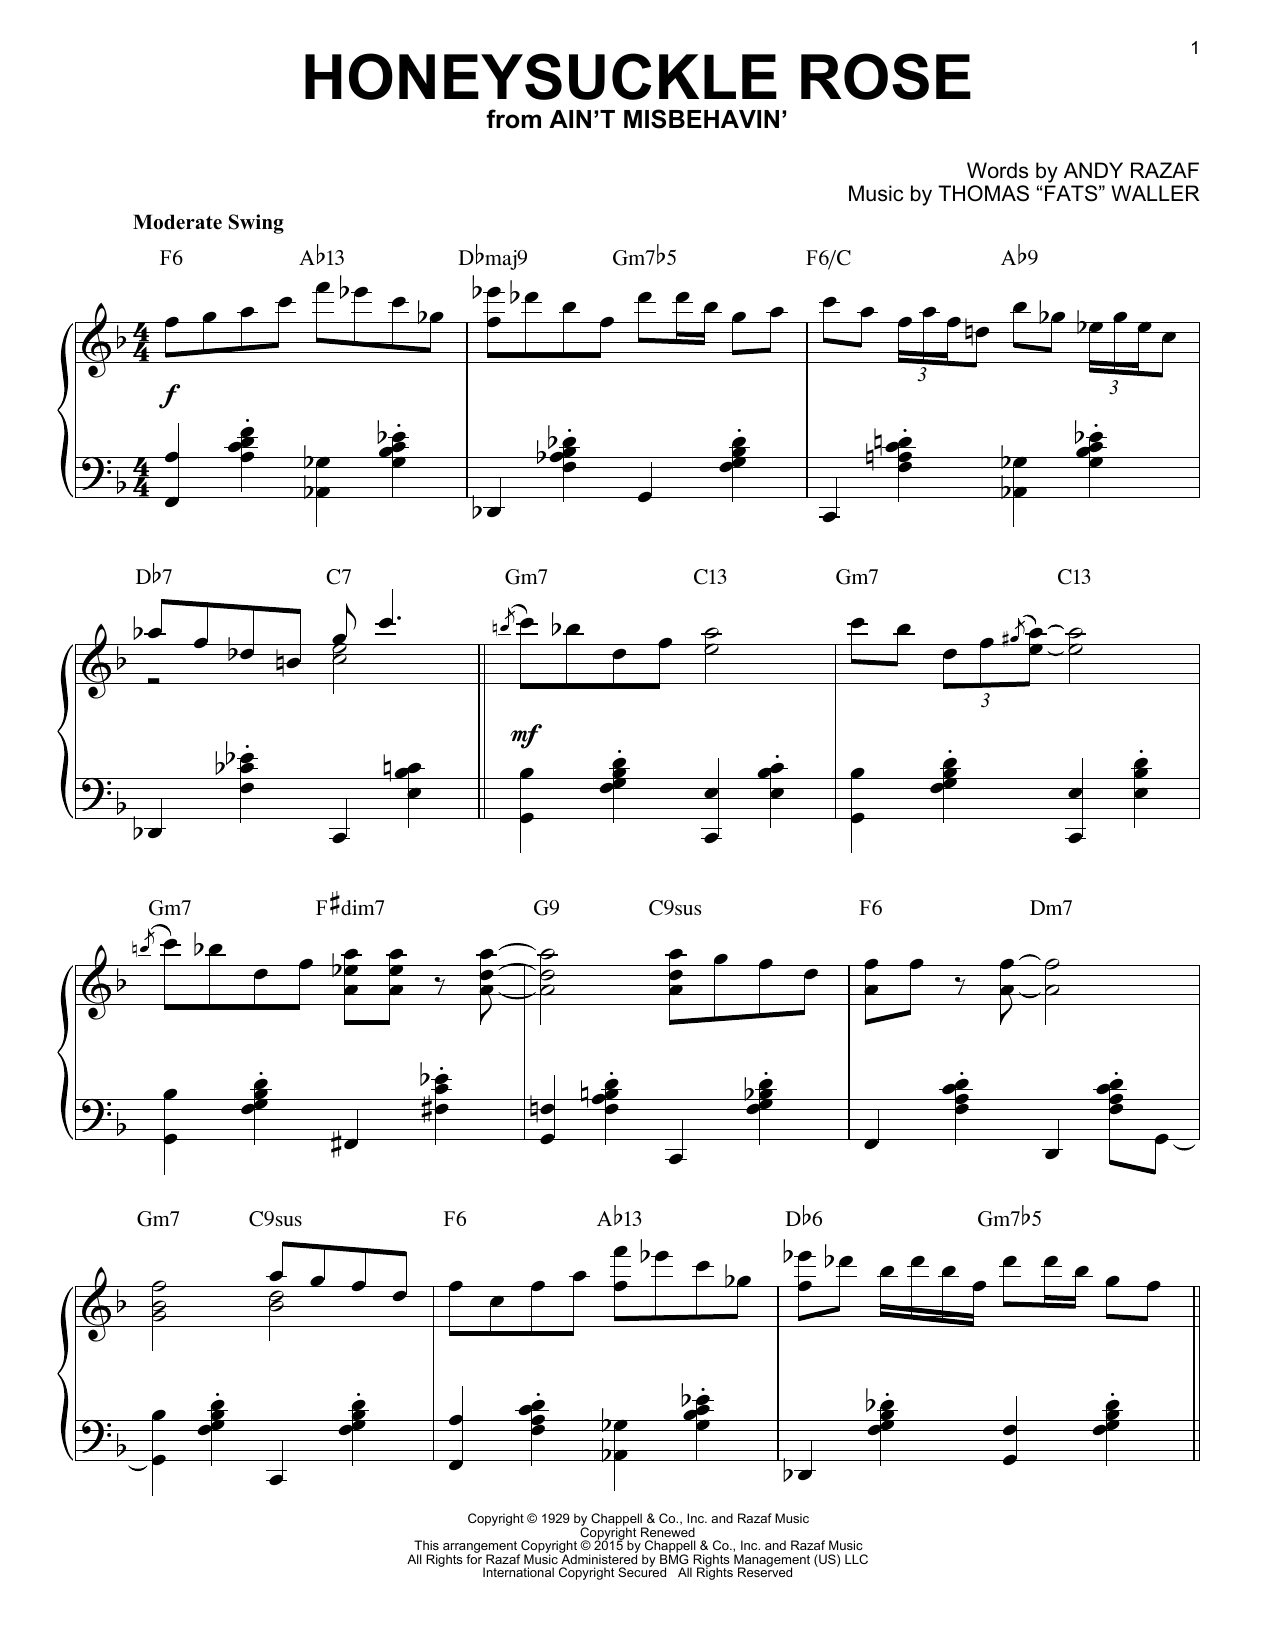 Django Reinhardt Honeysuckle Rose [Stride version] (arr. Brent Edstrom) Sheet Music Notes & Chords for Piano - Download or Print PDF